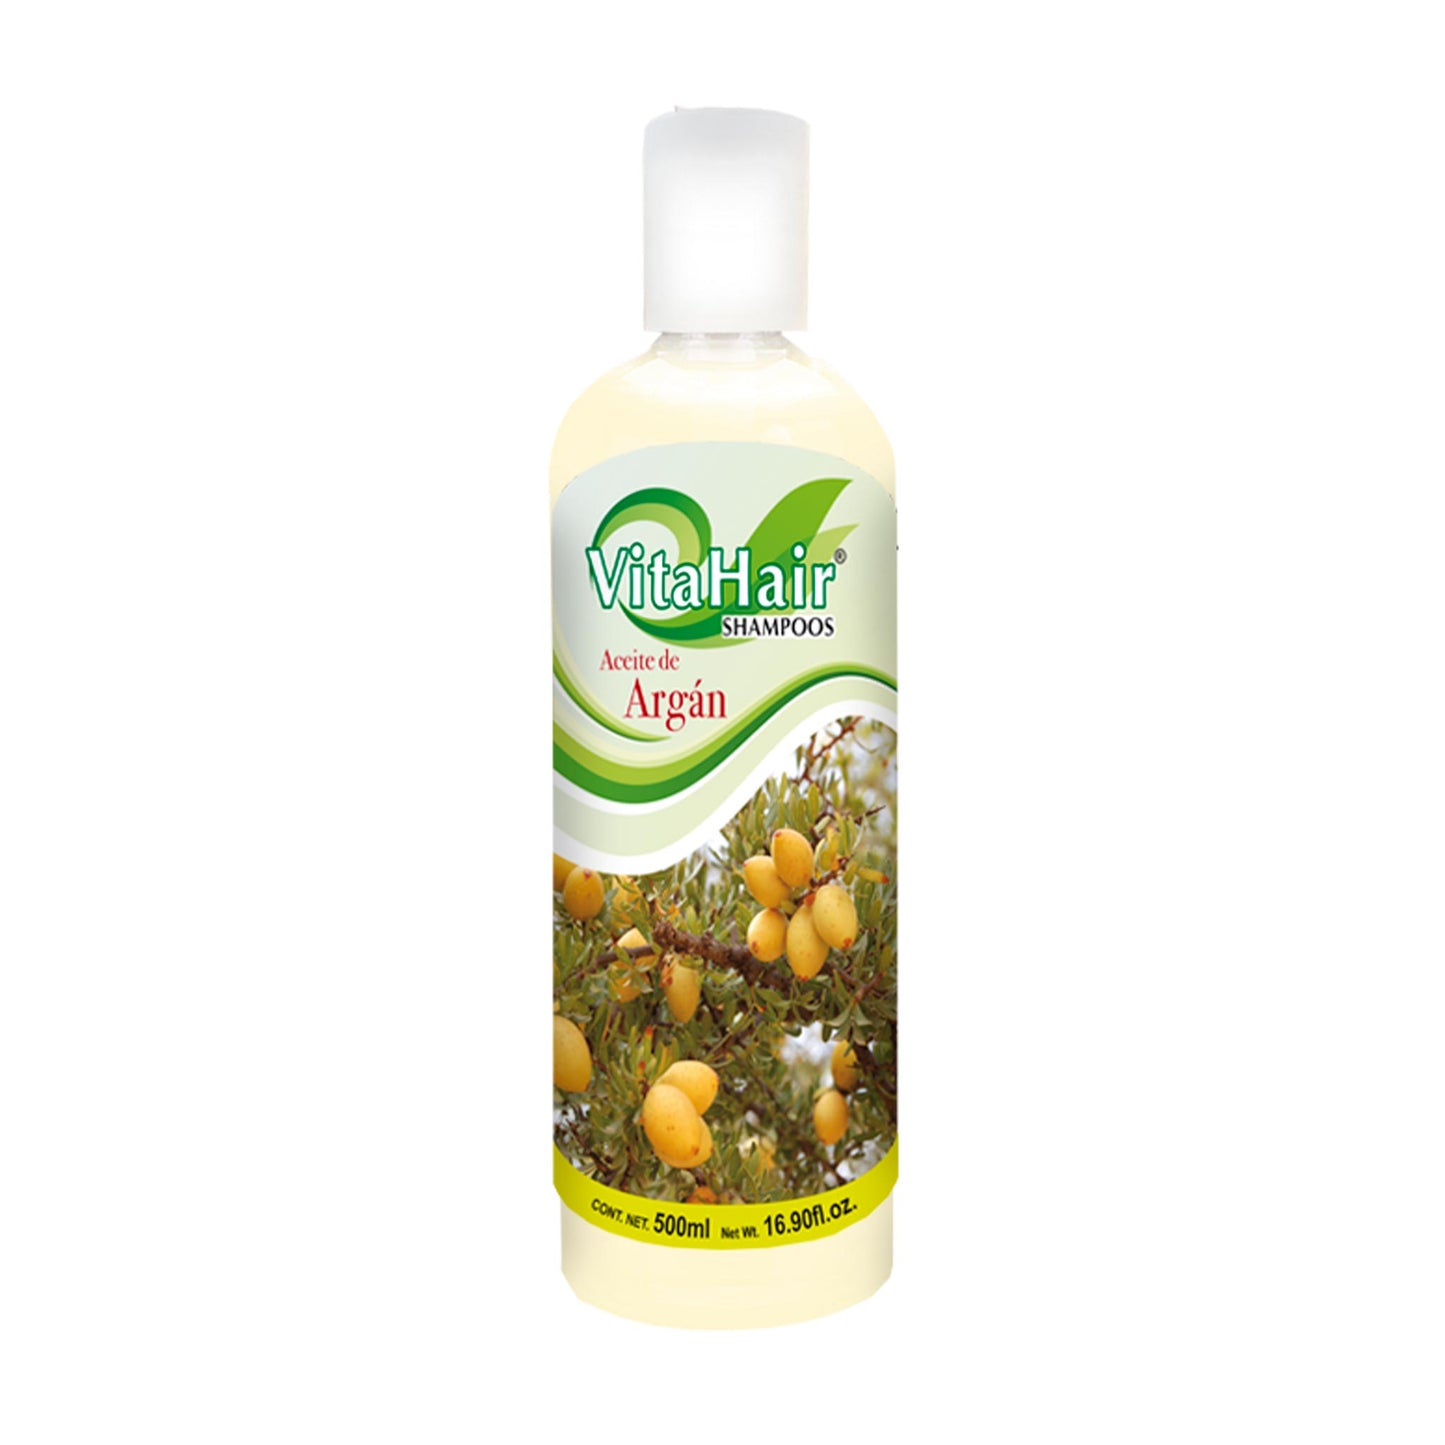 VITAHAIR ® shampoo de argán 500ml